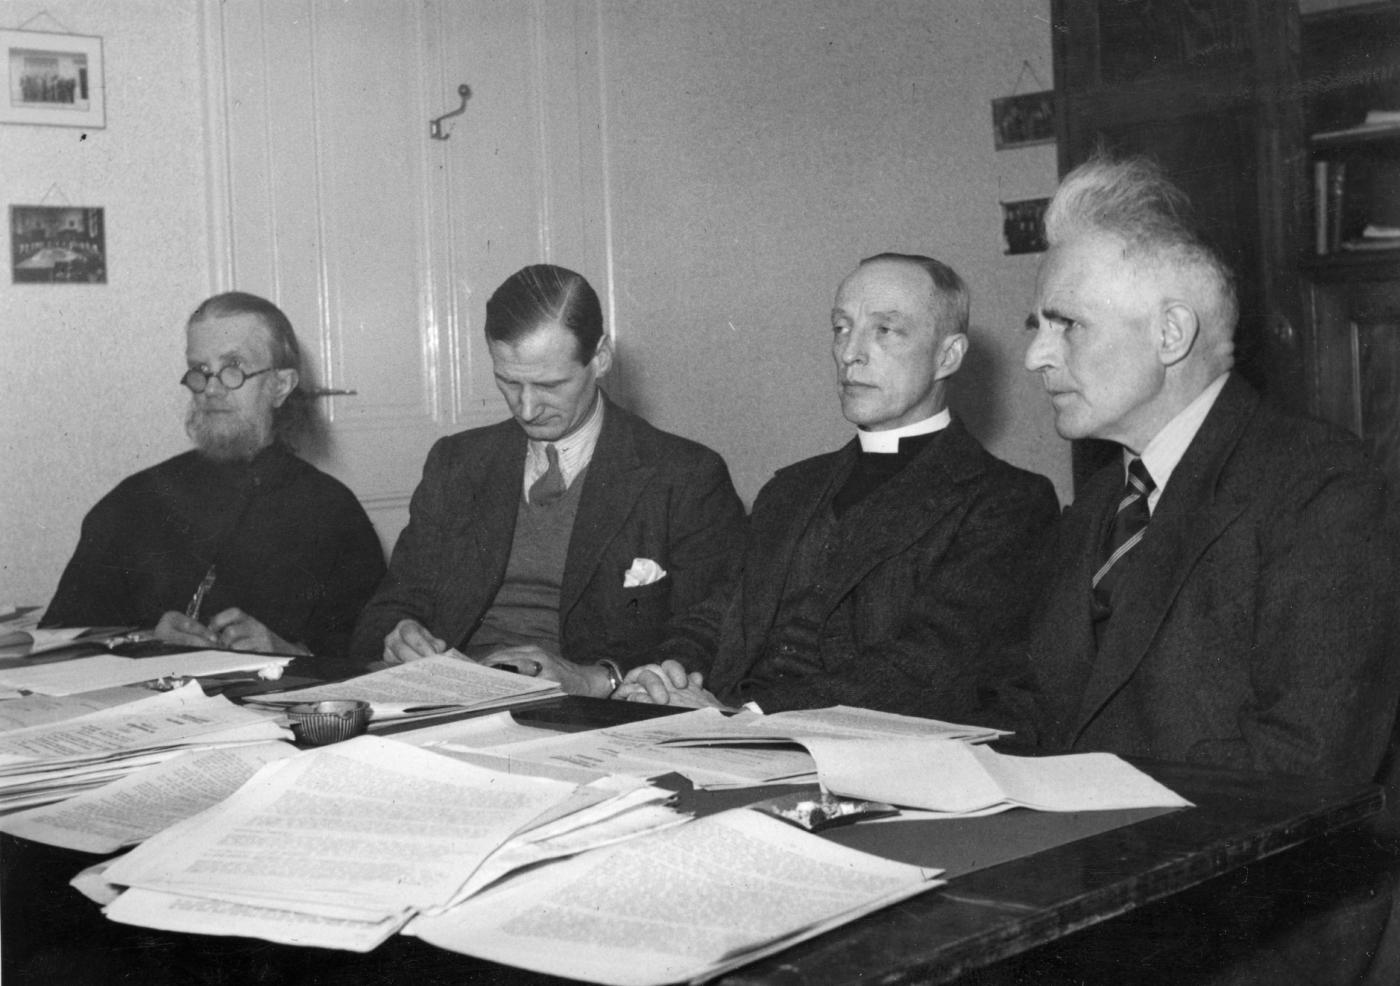 WCC70 Amsterdam 1948 (3) – Pacto en estudio: La iglesia universal y el  designio de Dios | World Council of Churches